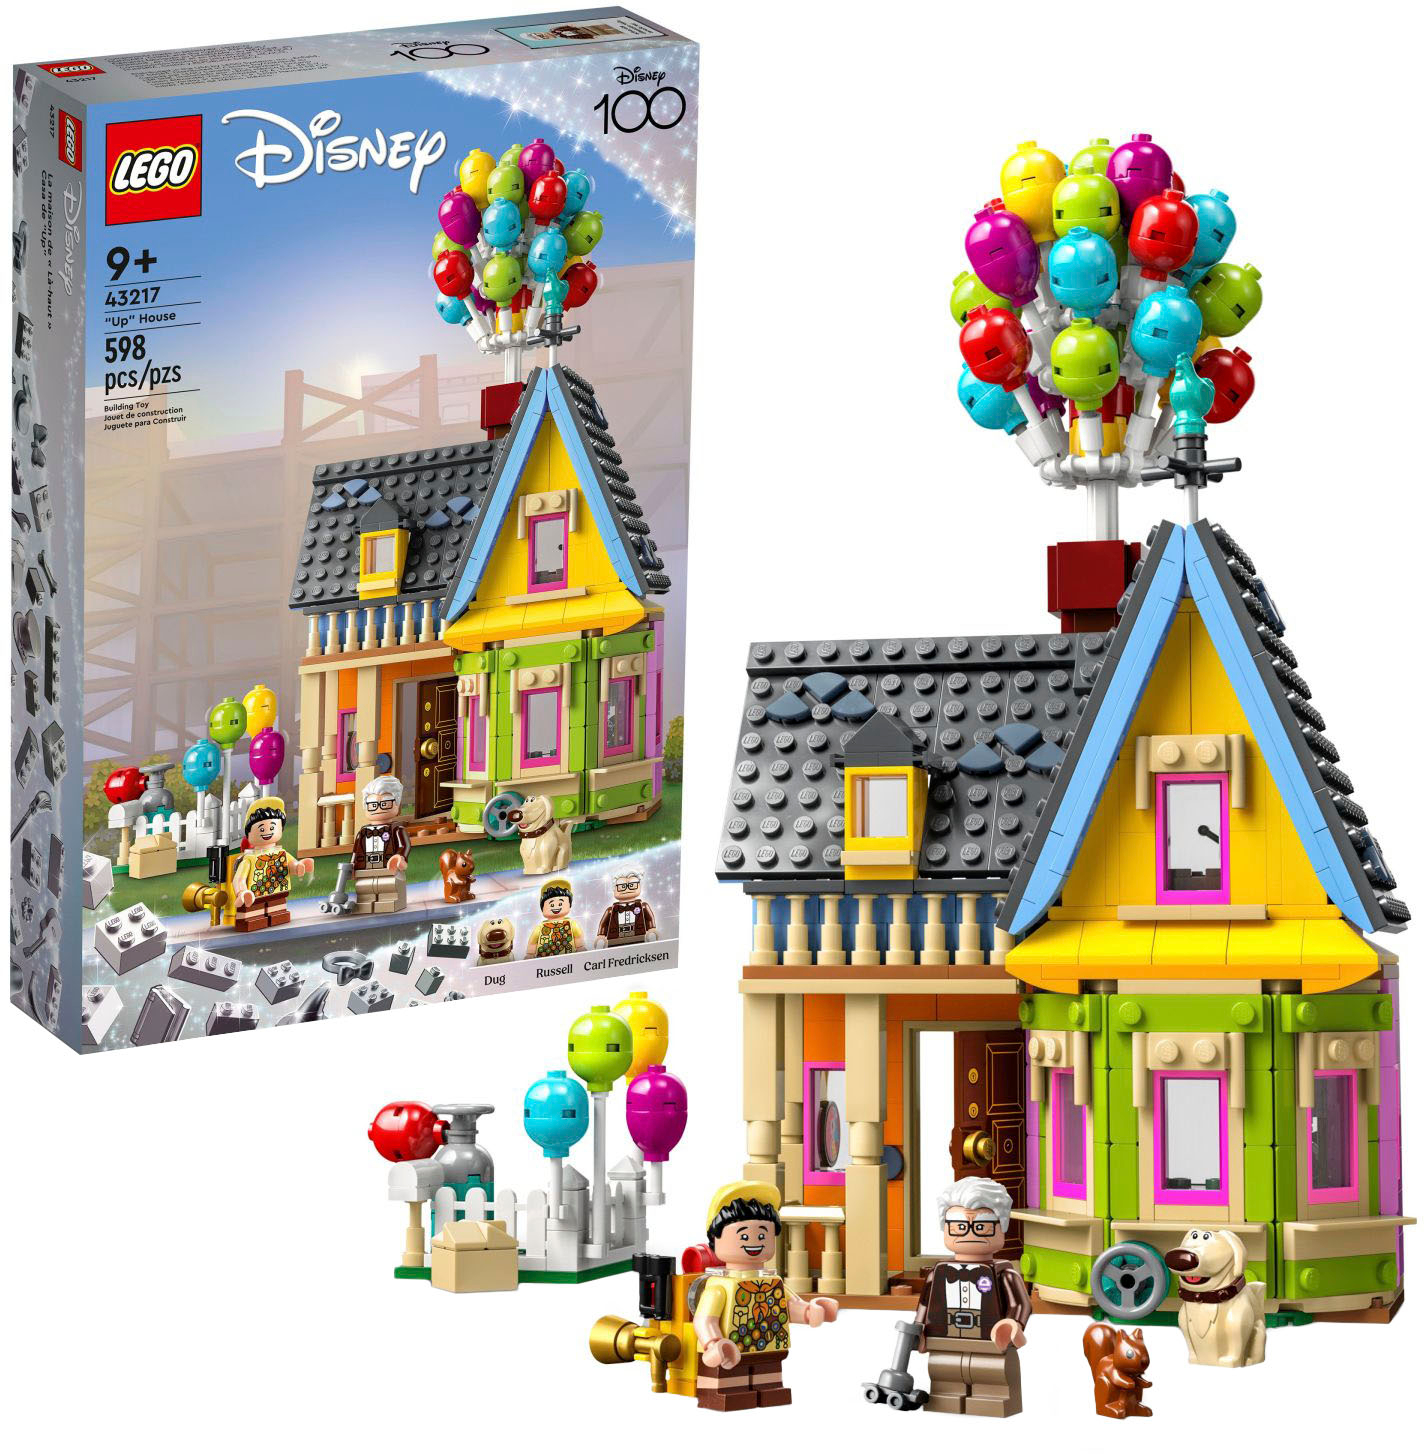 LEGO Disney Twirling Rapunzel 43214 6427569 - Best Buy